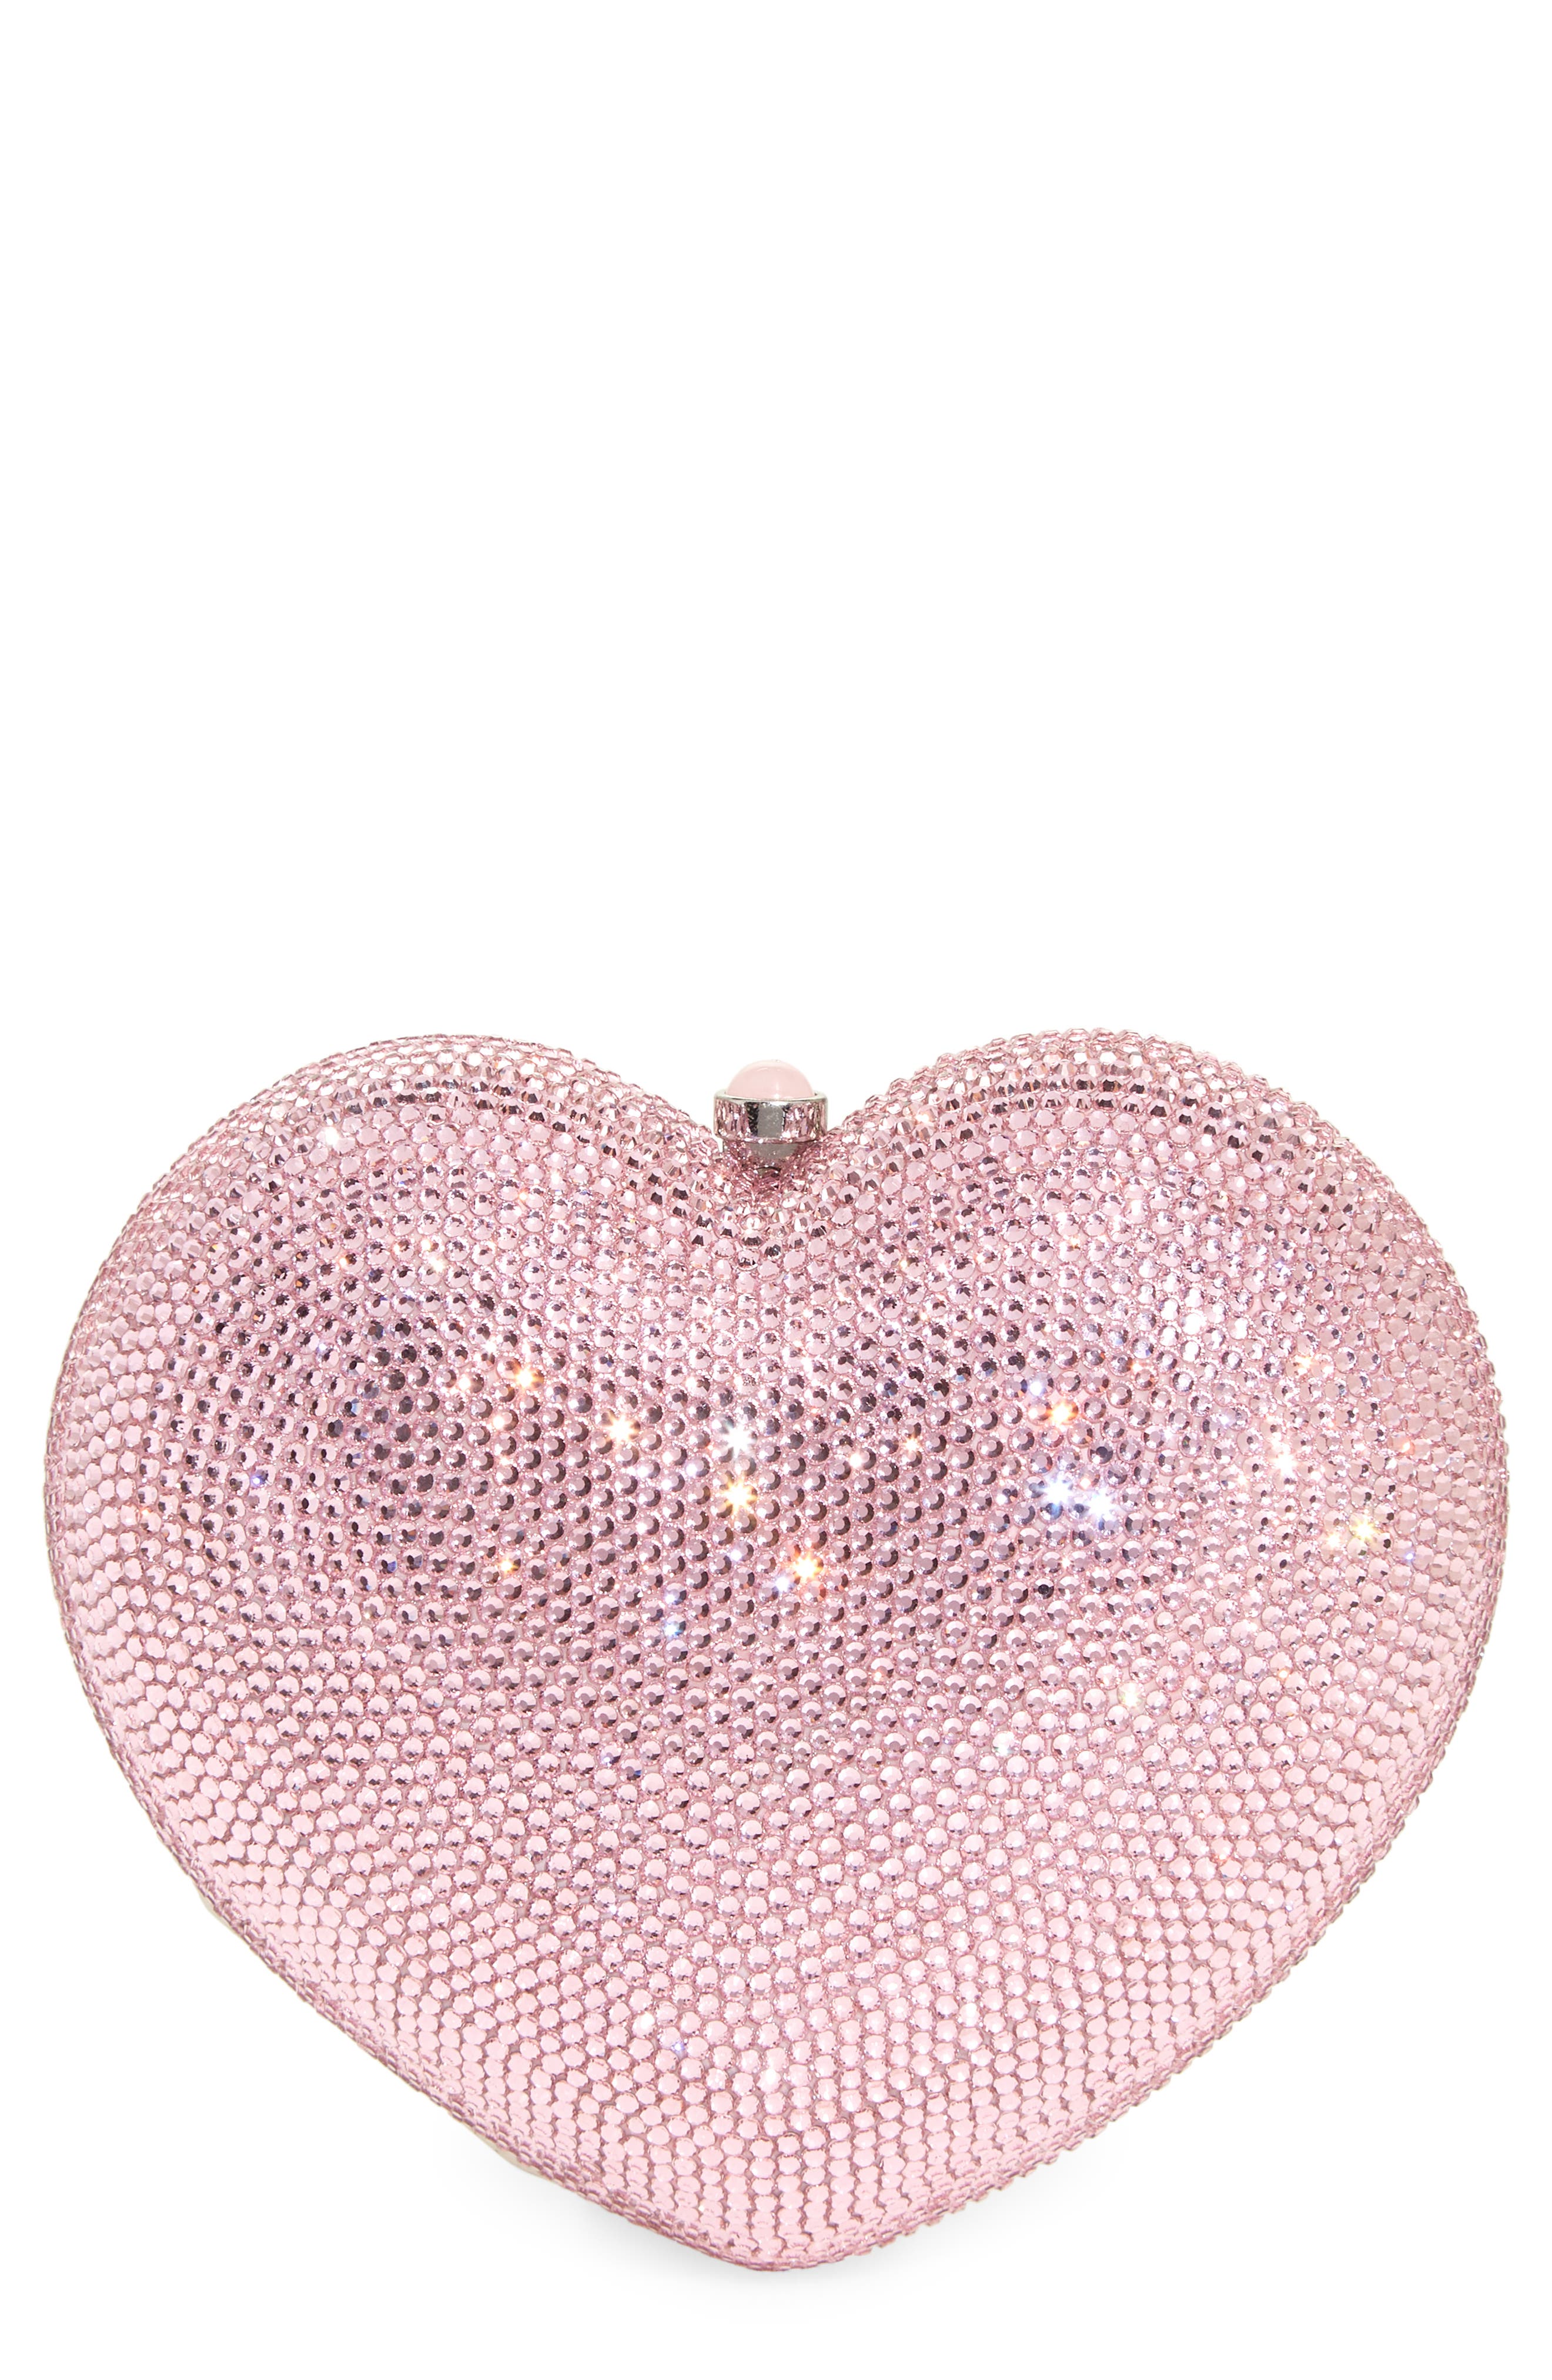 Judith Leiber crystal-embellished Rose Clutch Bag - Pink - One Size